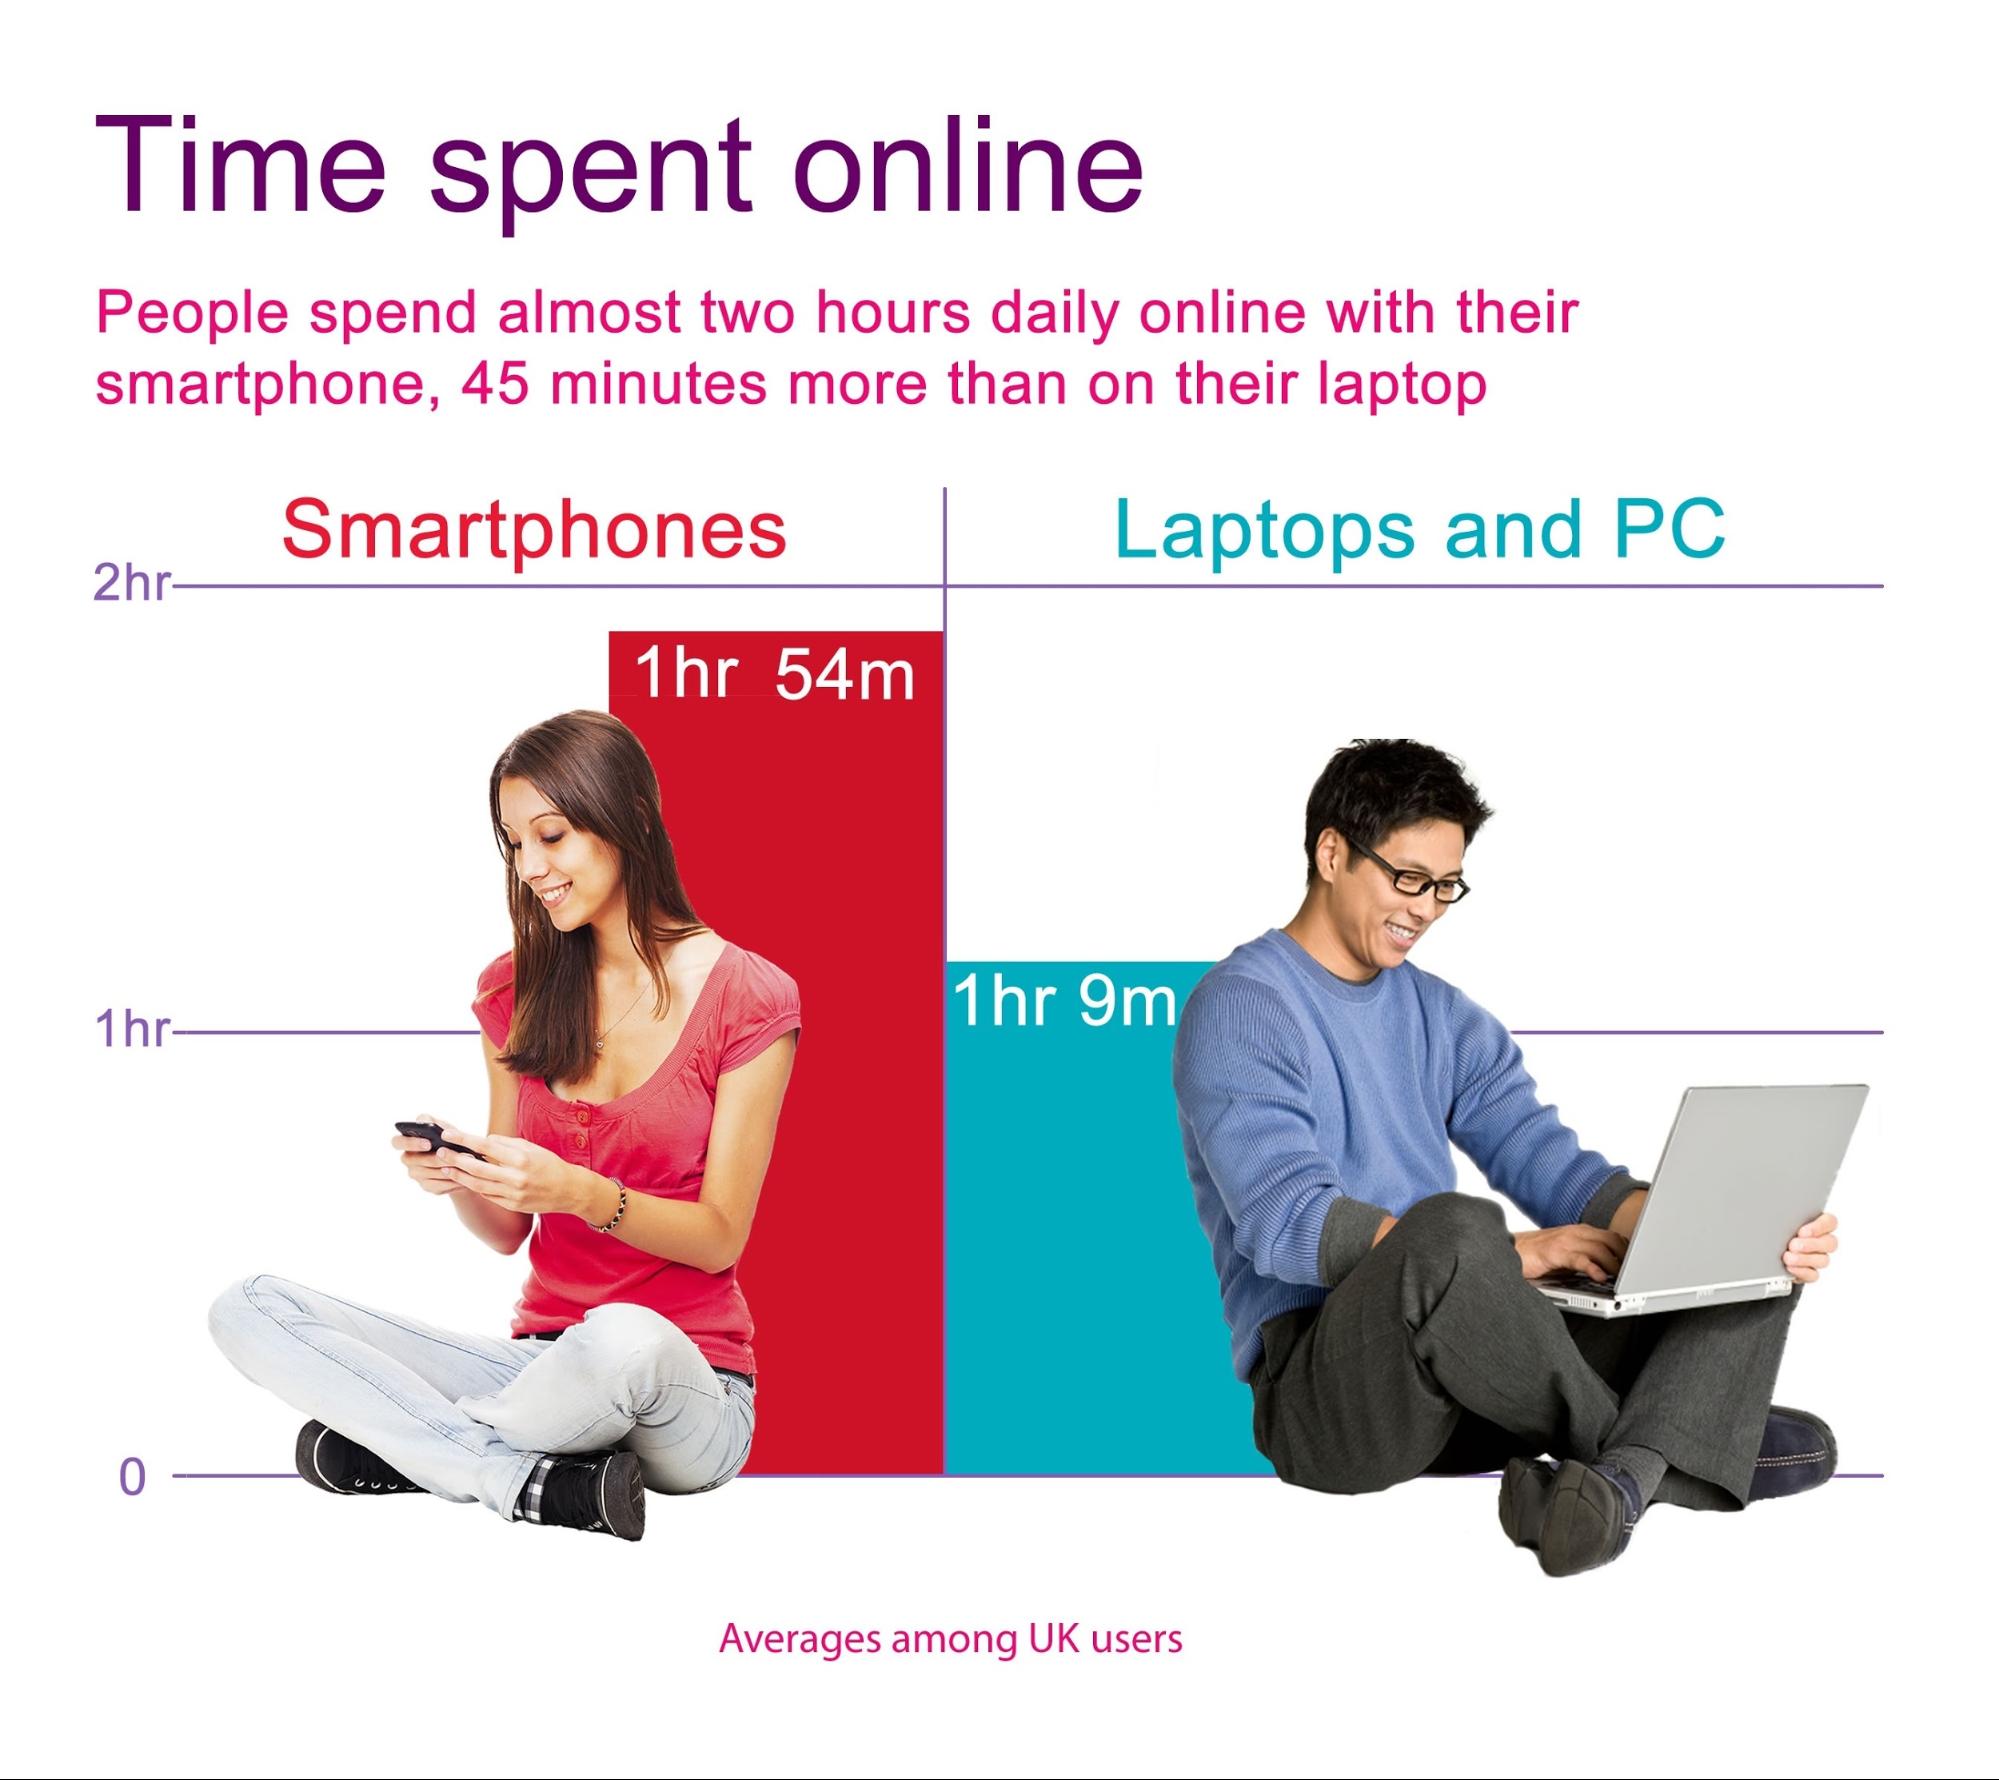 Facebook Ads vs Google Ads Time spent online stats